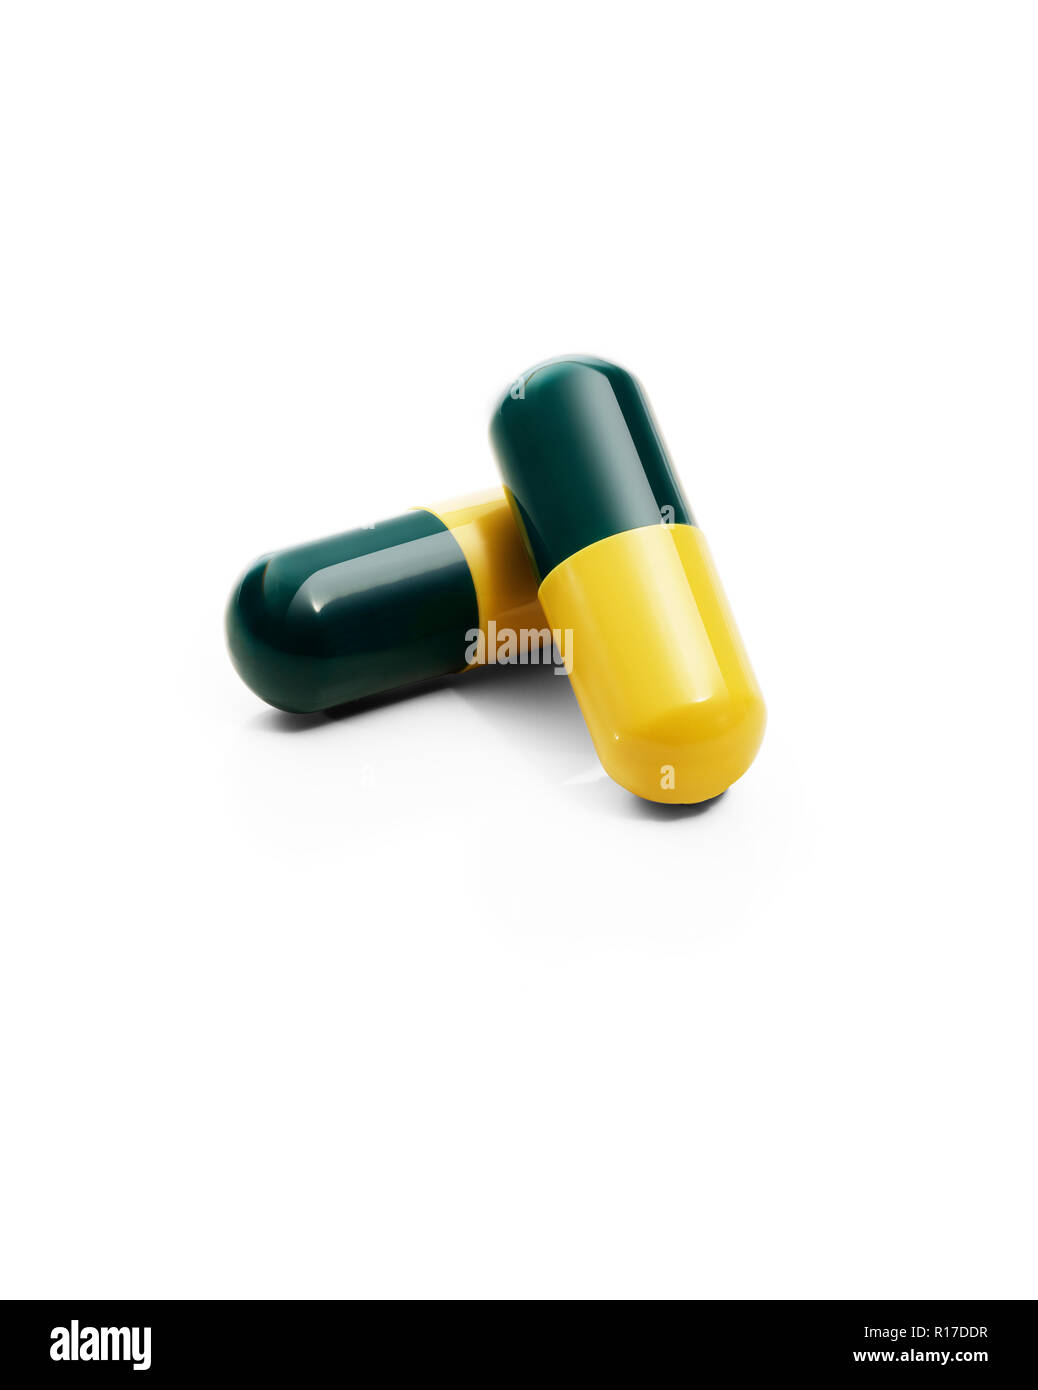 Due di colore verde scuro e giallo pillola farmaci capsule, still life Foto Stock